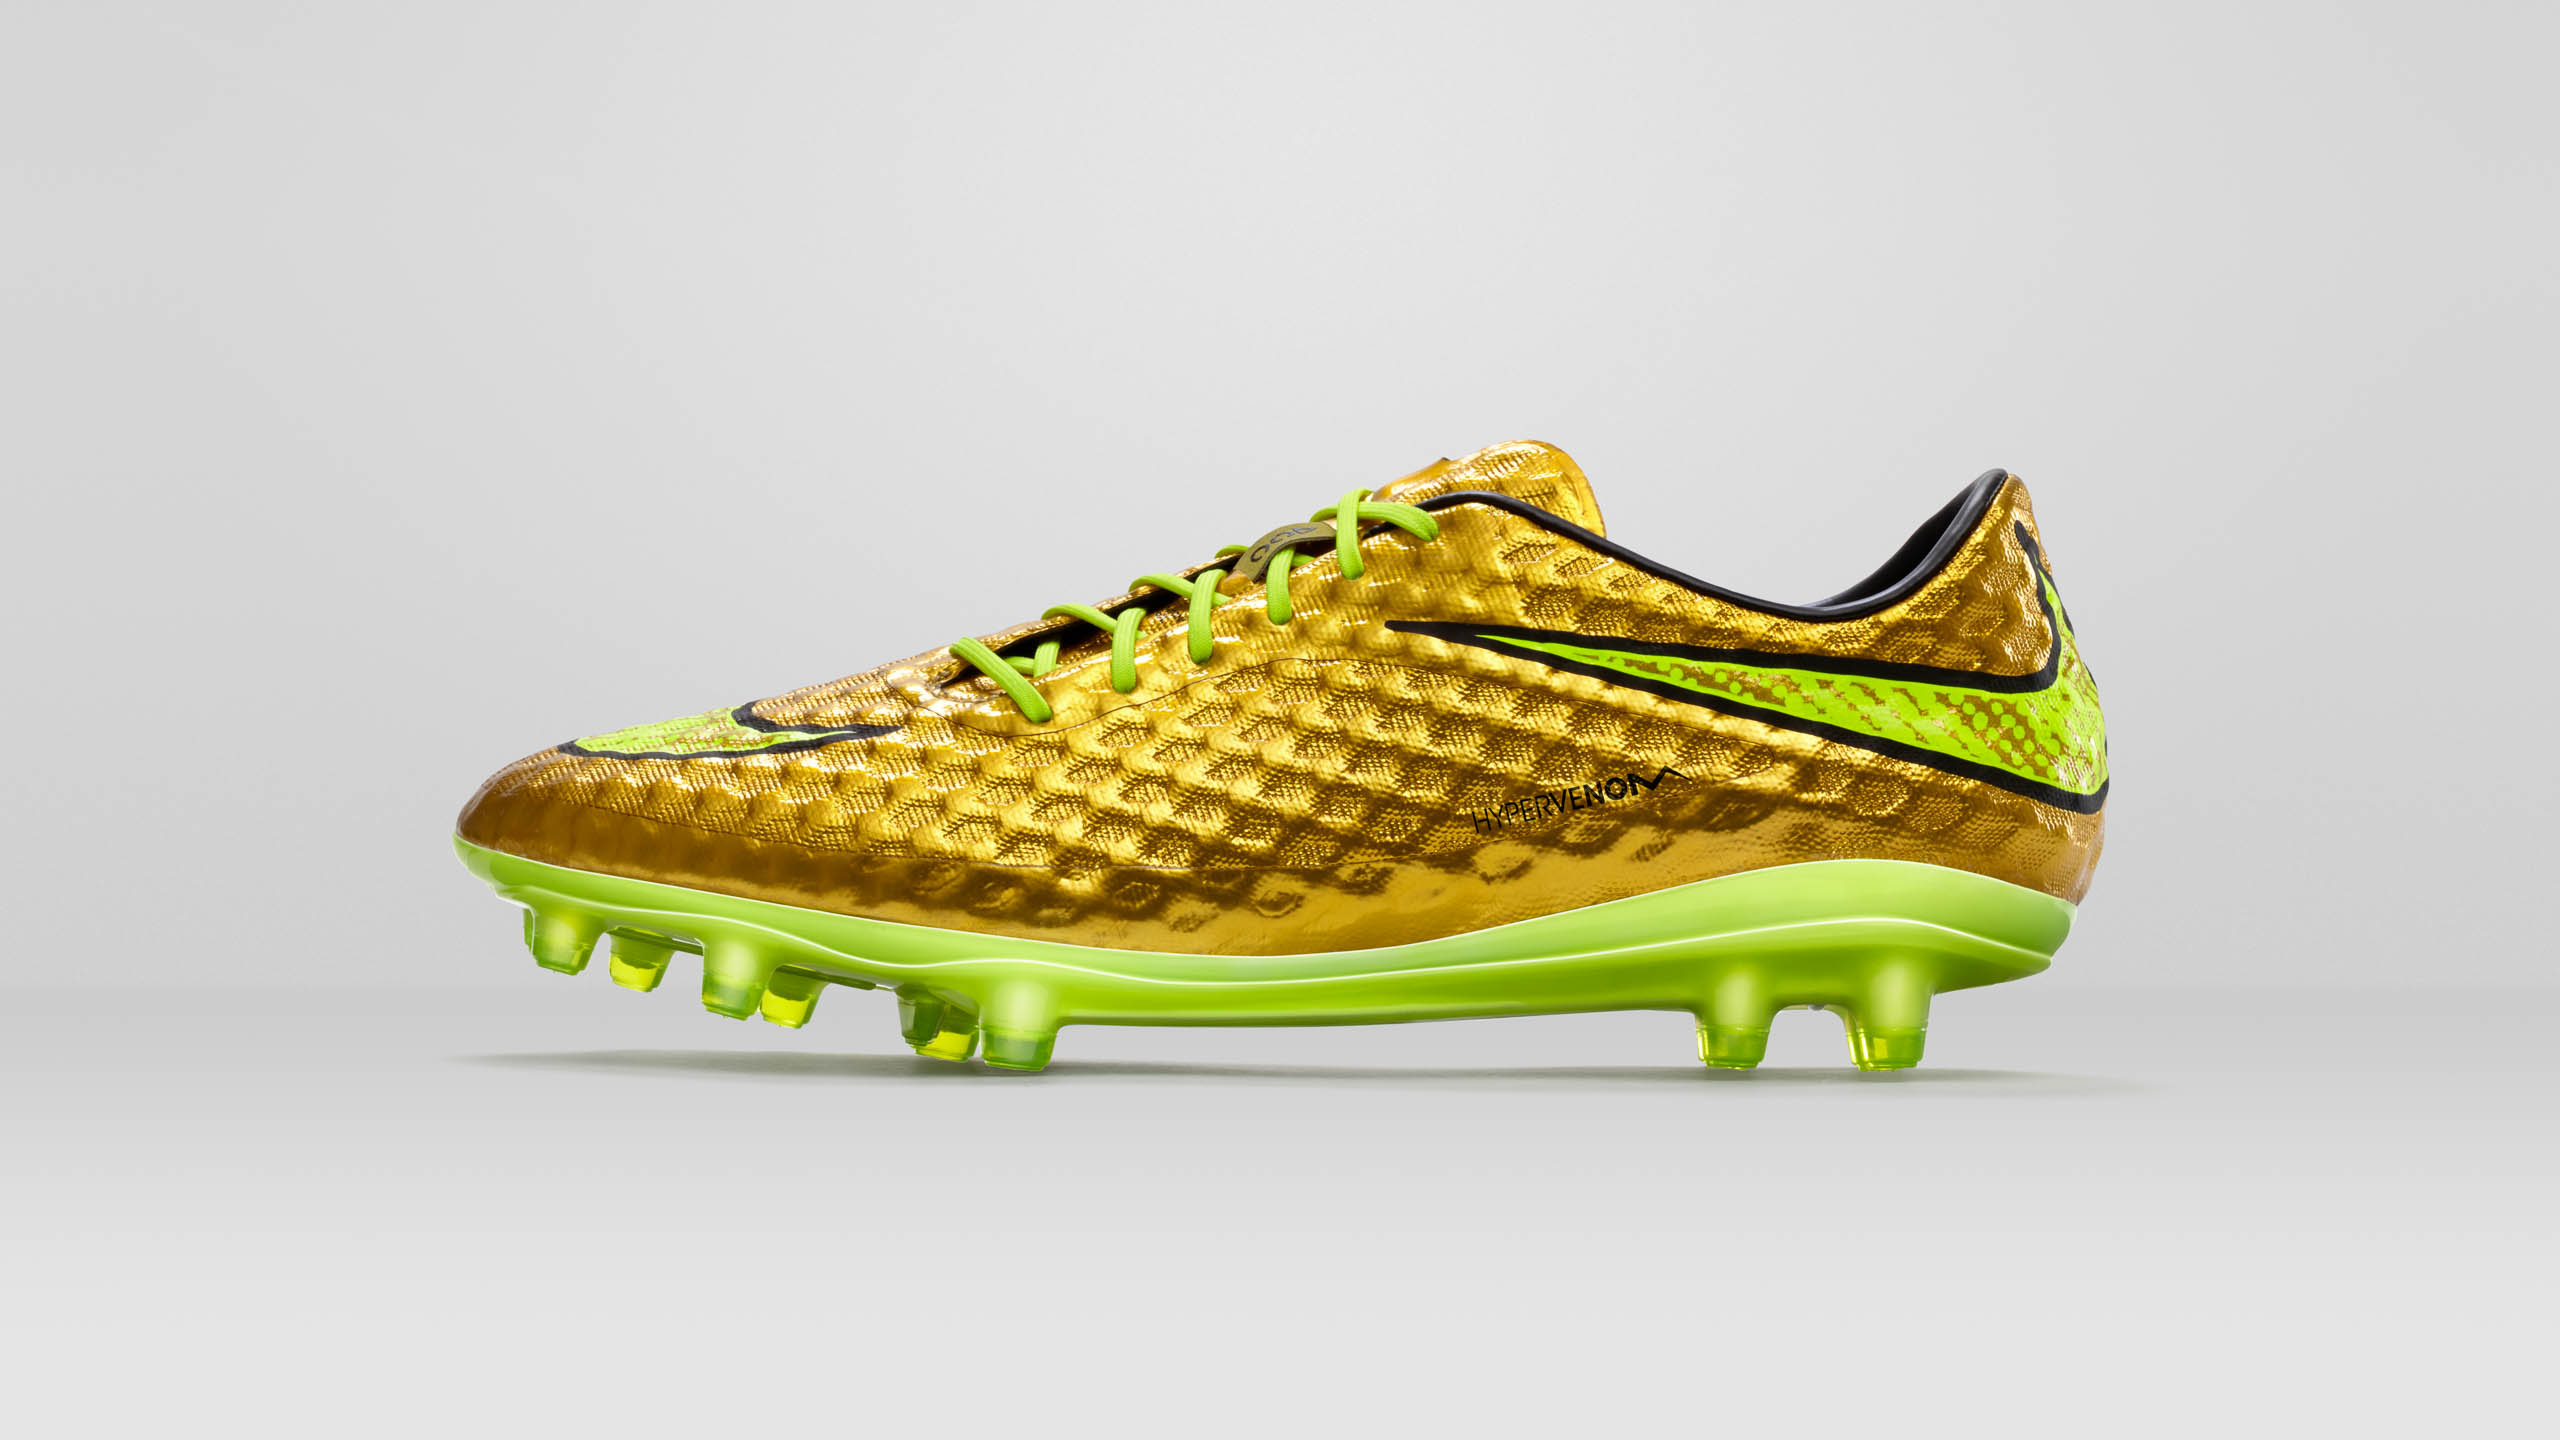  Nike Hypervenom Gold Neymar soccer cleat